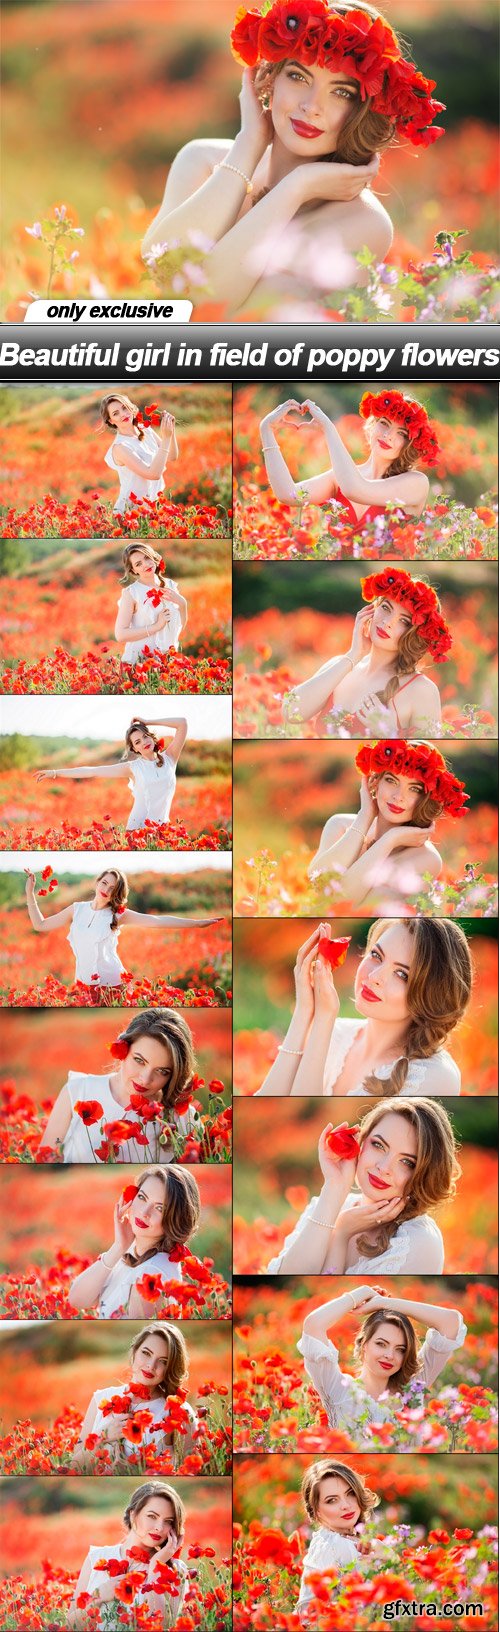 Beautiful girl in field of poppy flowers - 15 UHQ JPEG